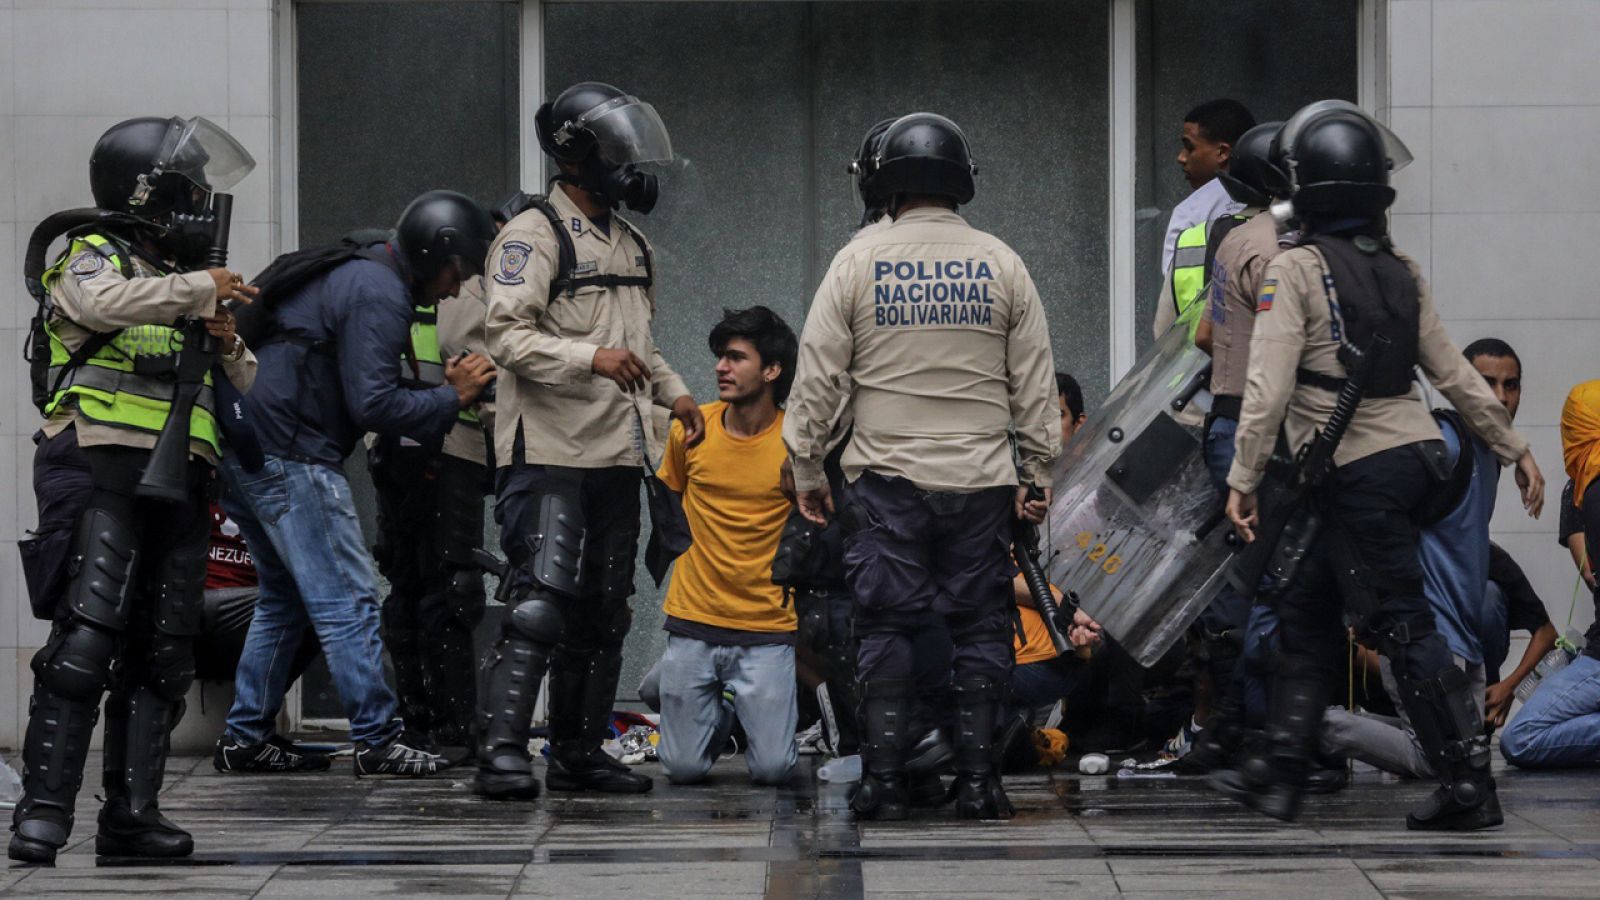 Agentes de la Policía Nacional Bolivariana detienen a manifestantes durante una marcha en Caracas